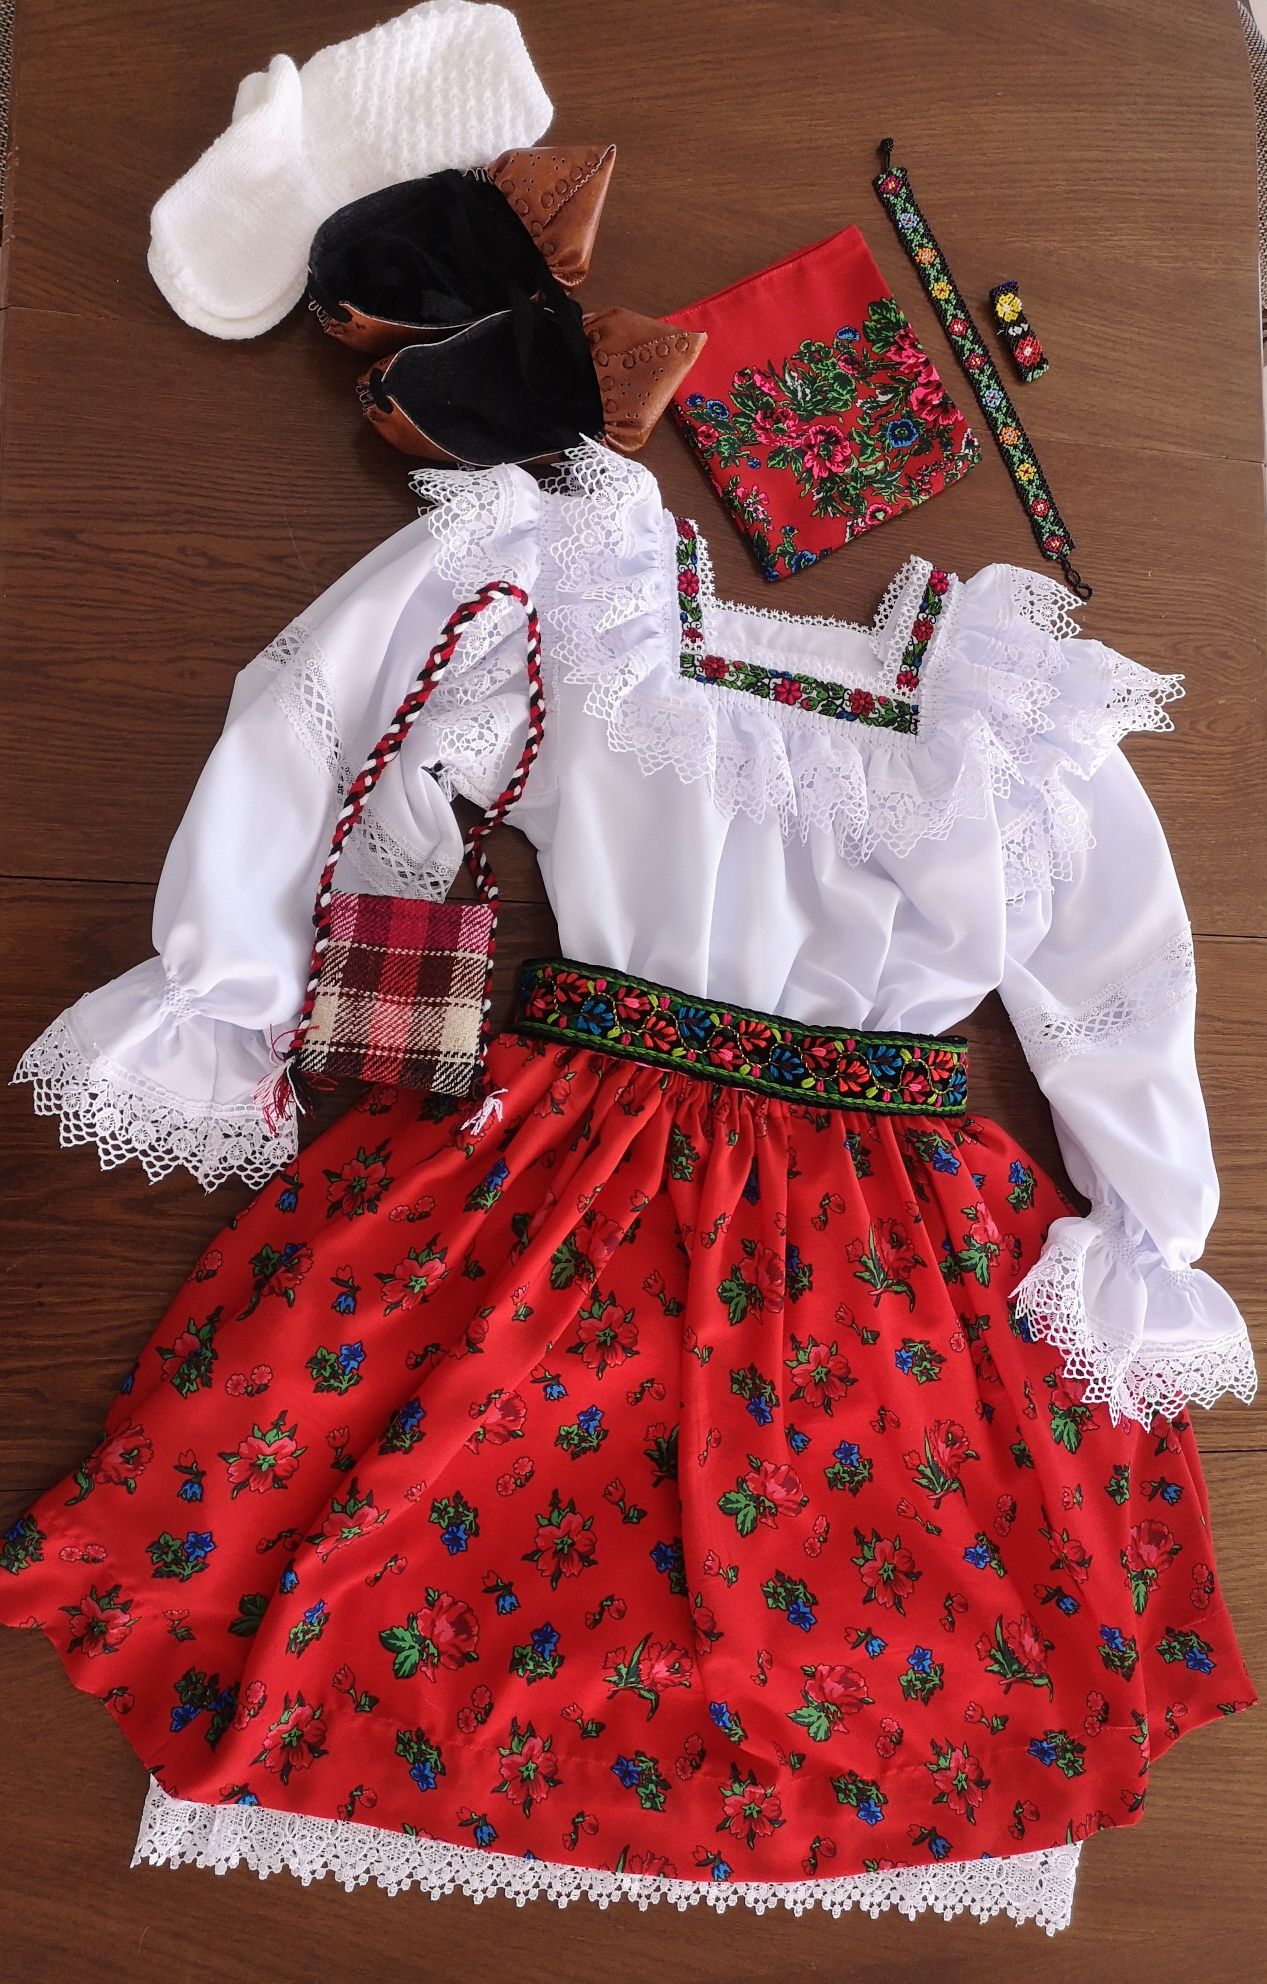 Costum popular pentru femei din Maramures